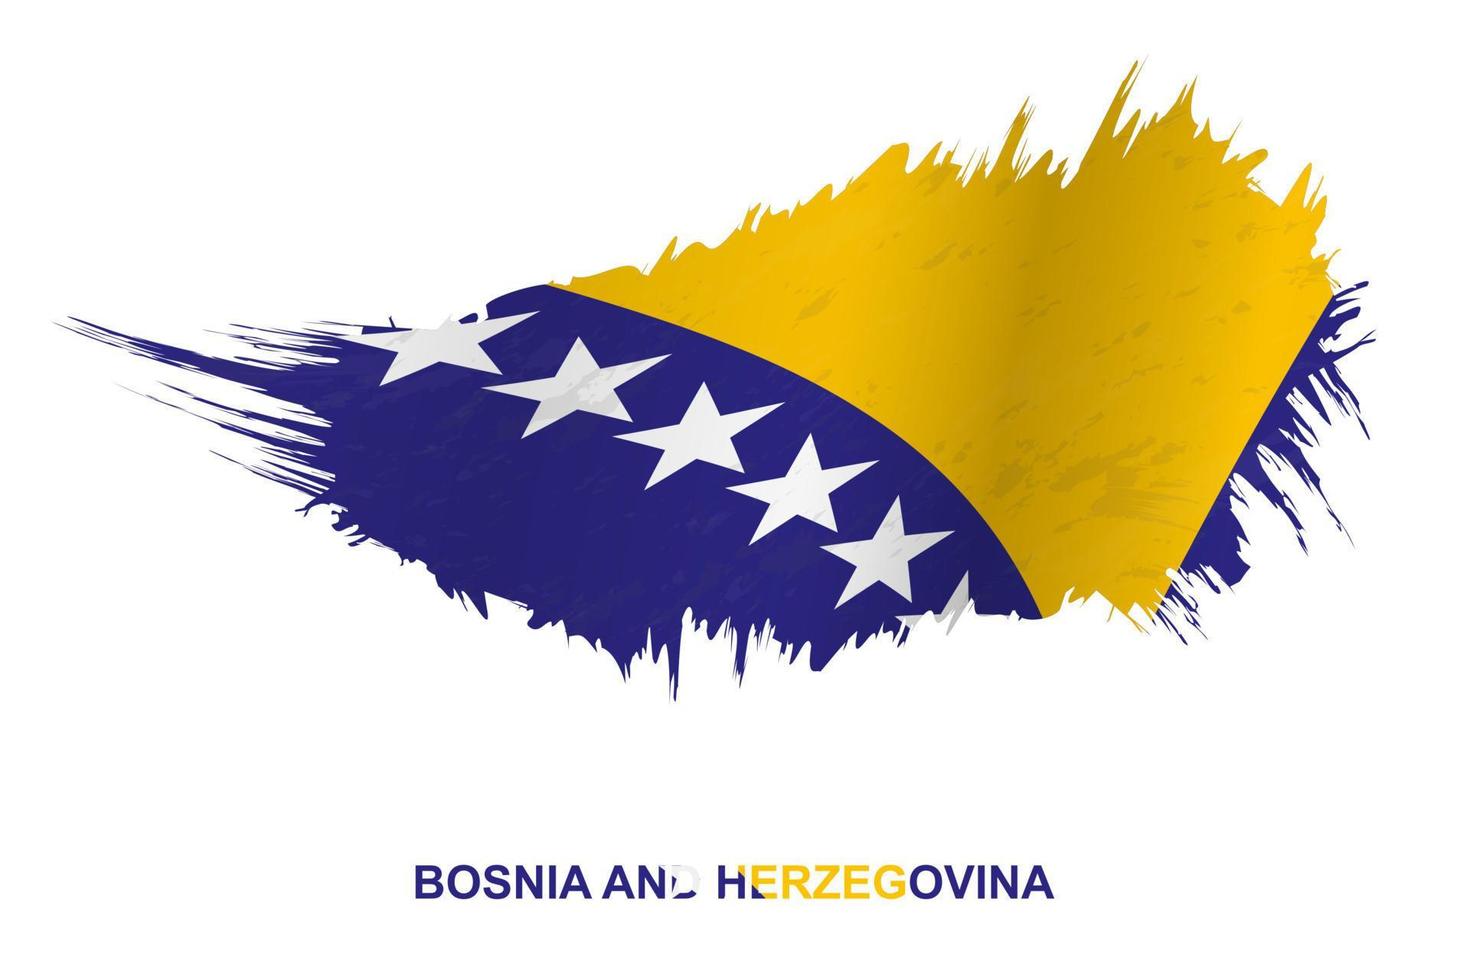 bandeira da Bósnia e Herzegovina em estilo grunge com efeito de ondulação. vetor